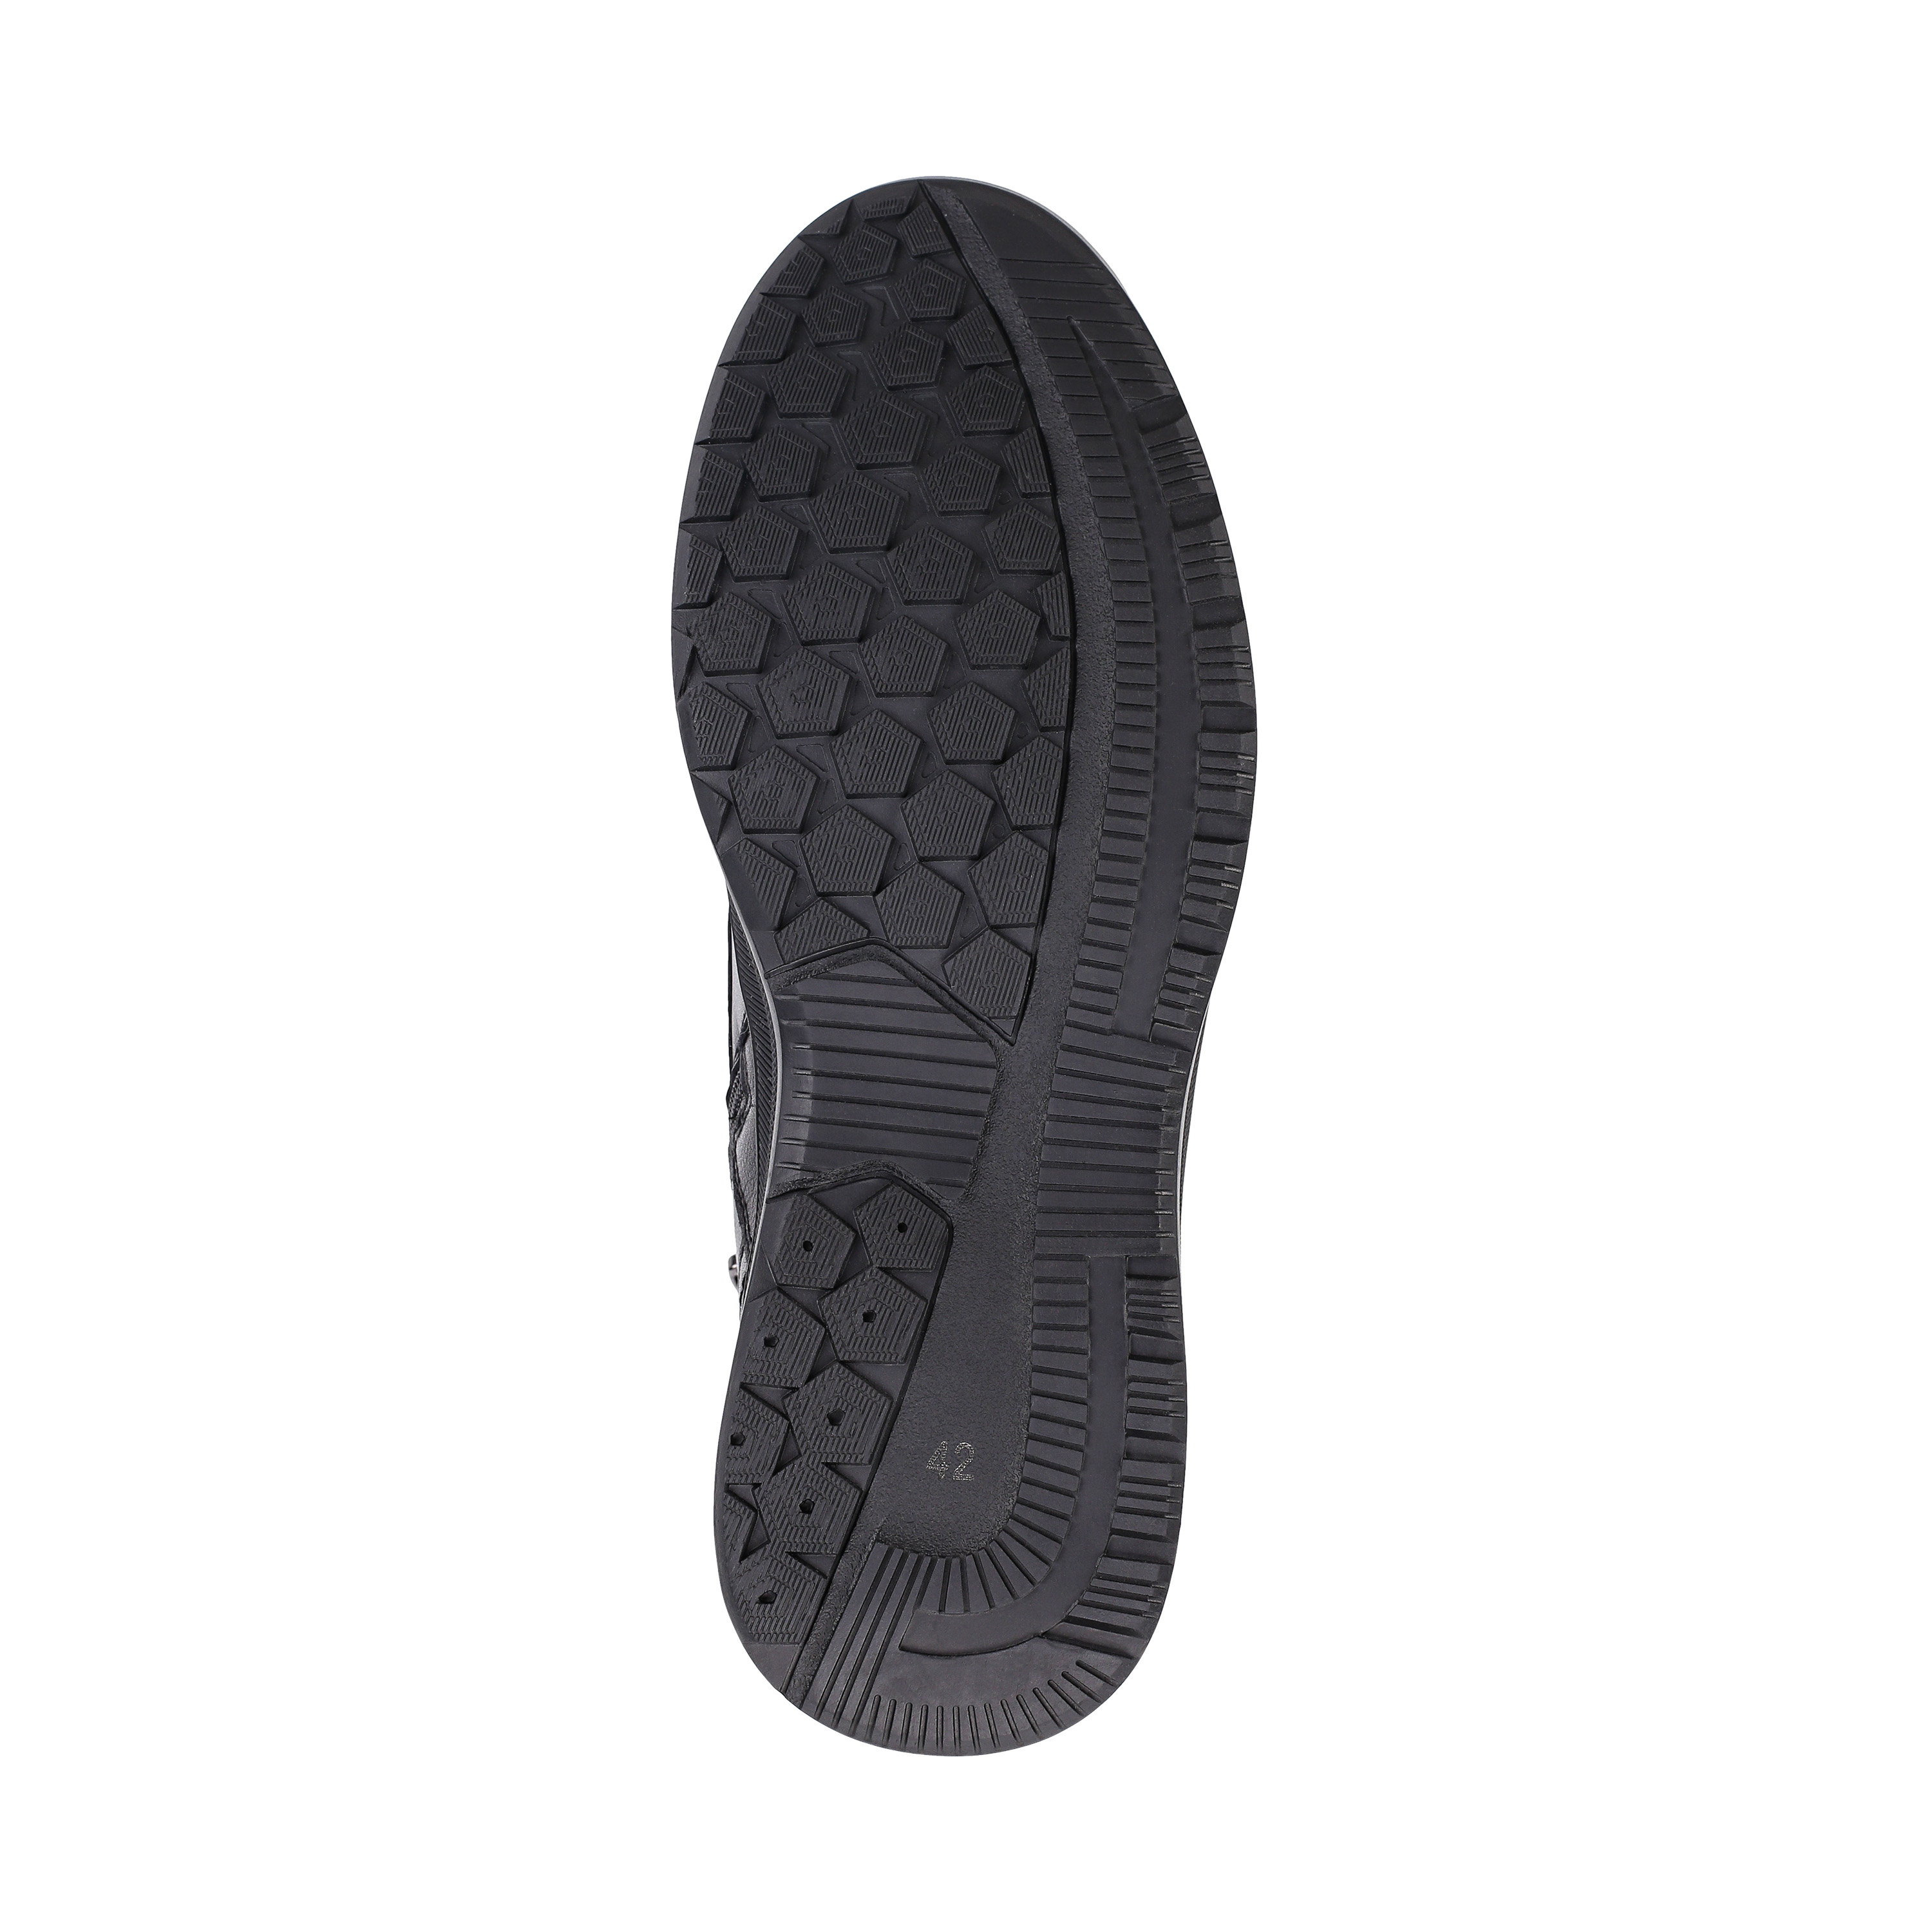 Ботинки Thomas Munz 104-158C-2102 104-158C-2102, цвет черный, размер 40 дерби - фото 4